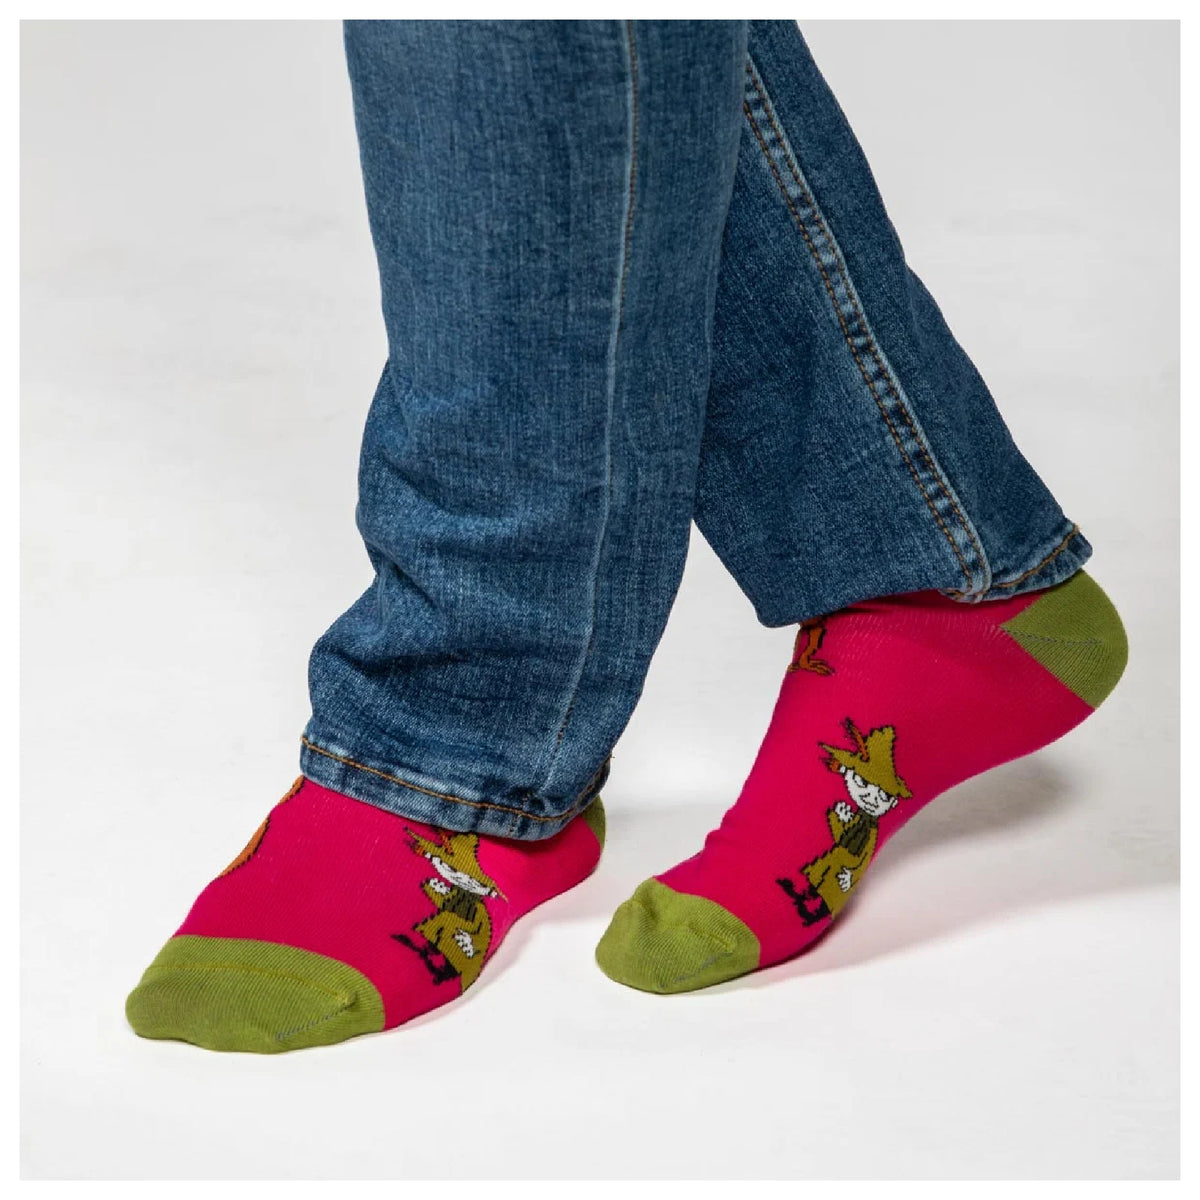 Moomin Friends Socks Magenta/Green